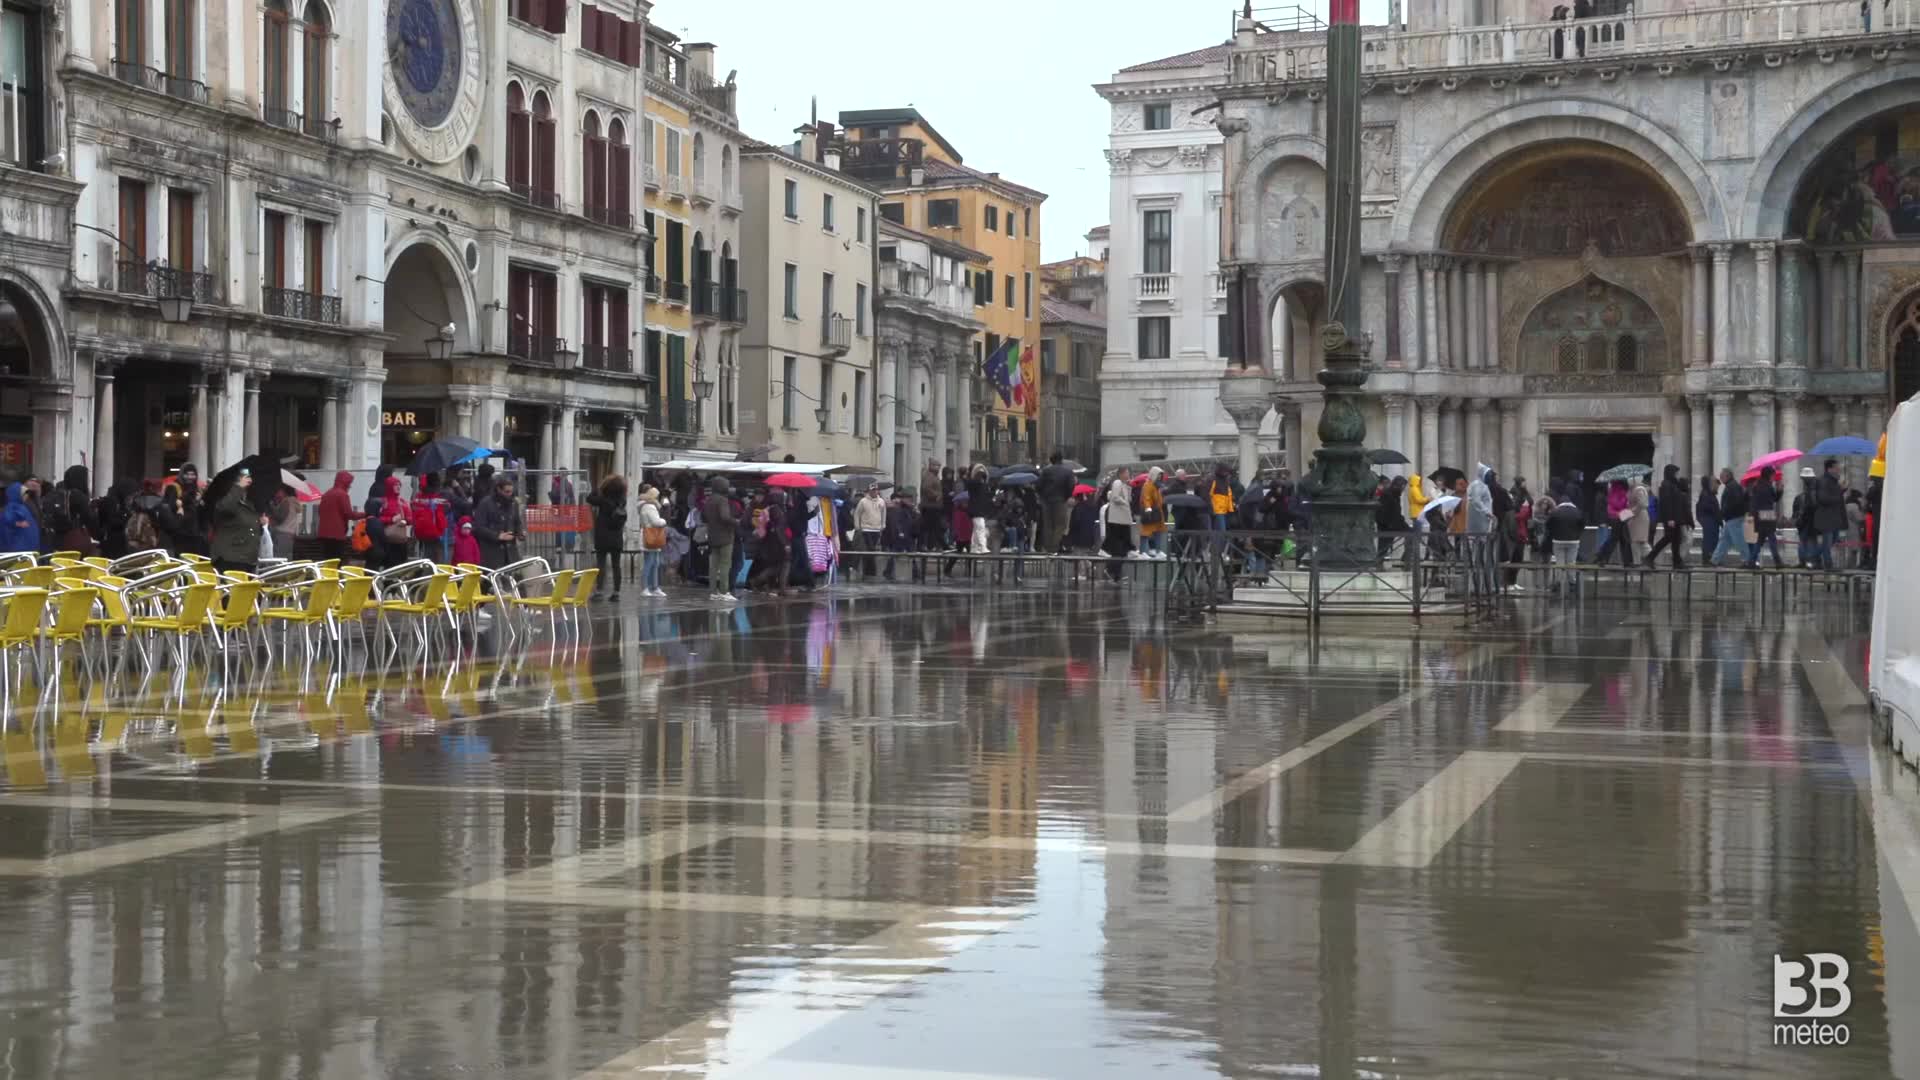 Raggiunto picco acqua alta a Venezia, Piazza San Marco allagata: 